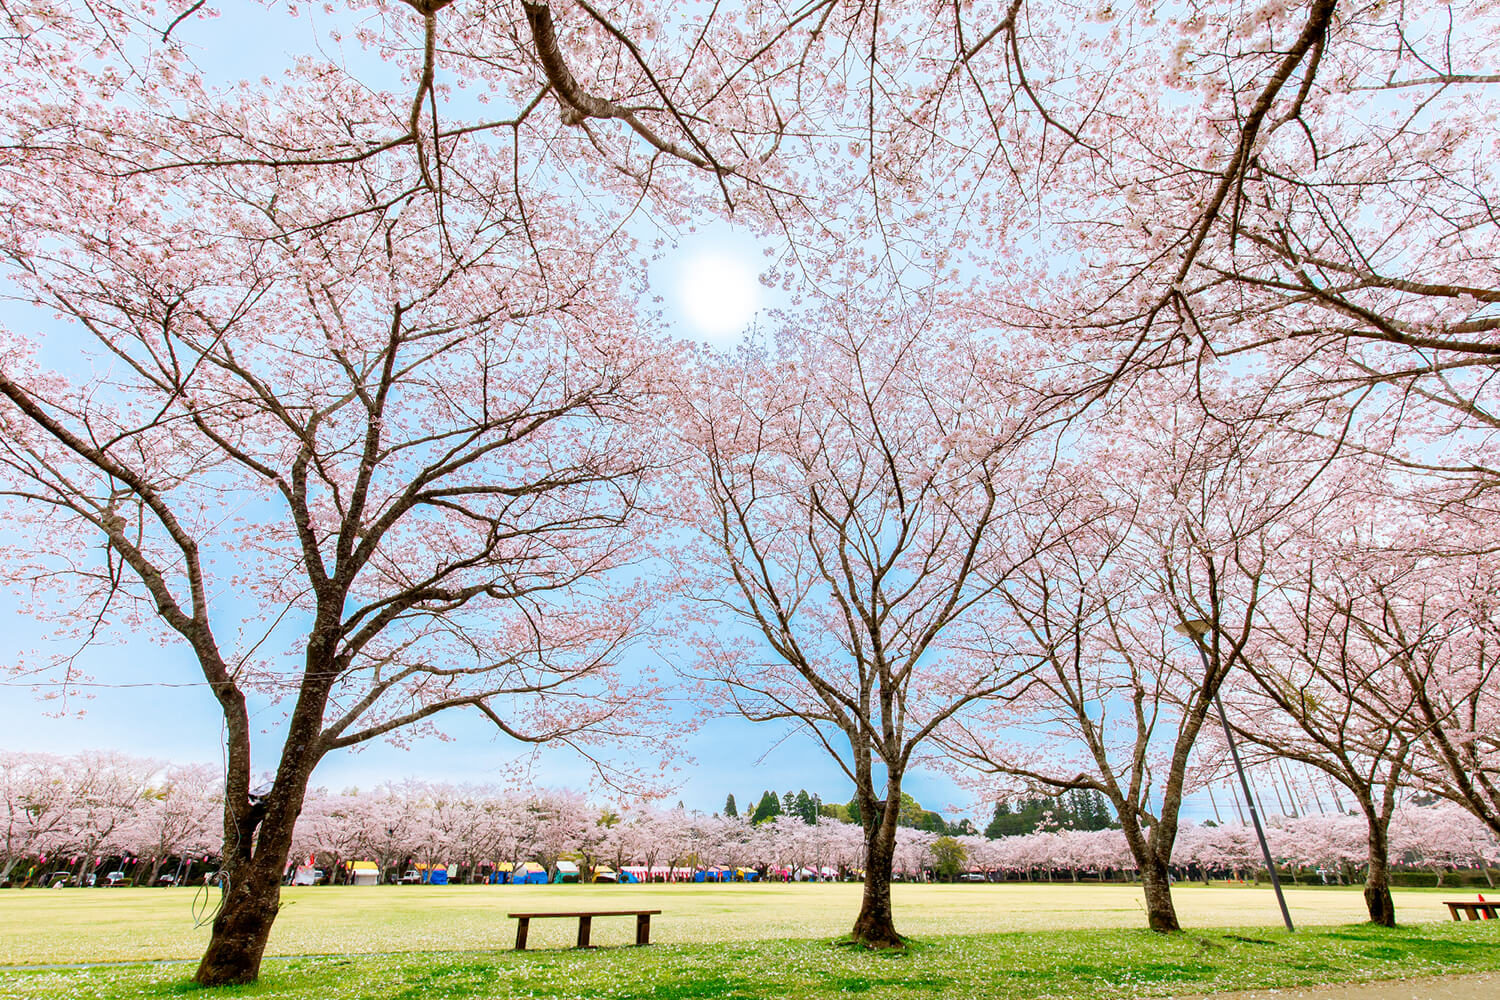 公園をぐるりと囲むように植えられている桜。風が吹くとピンクの花びらが舞い幻想的な風景に ©ULTRA-C